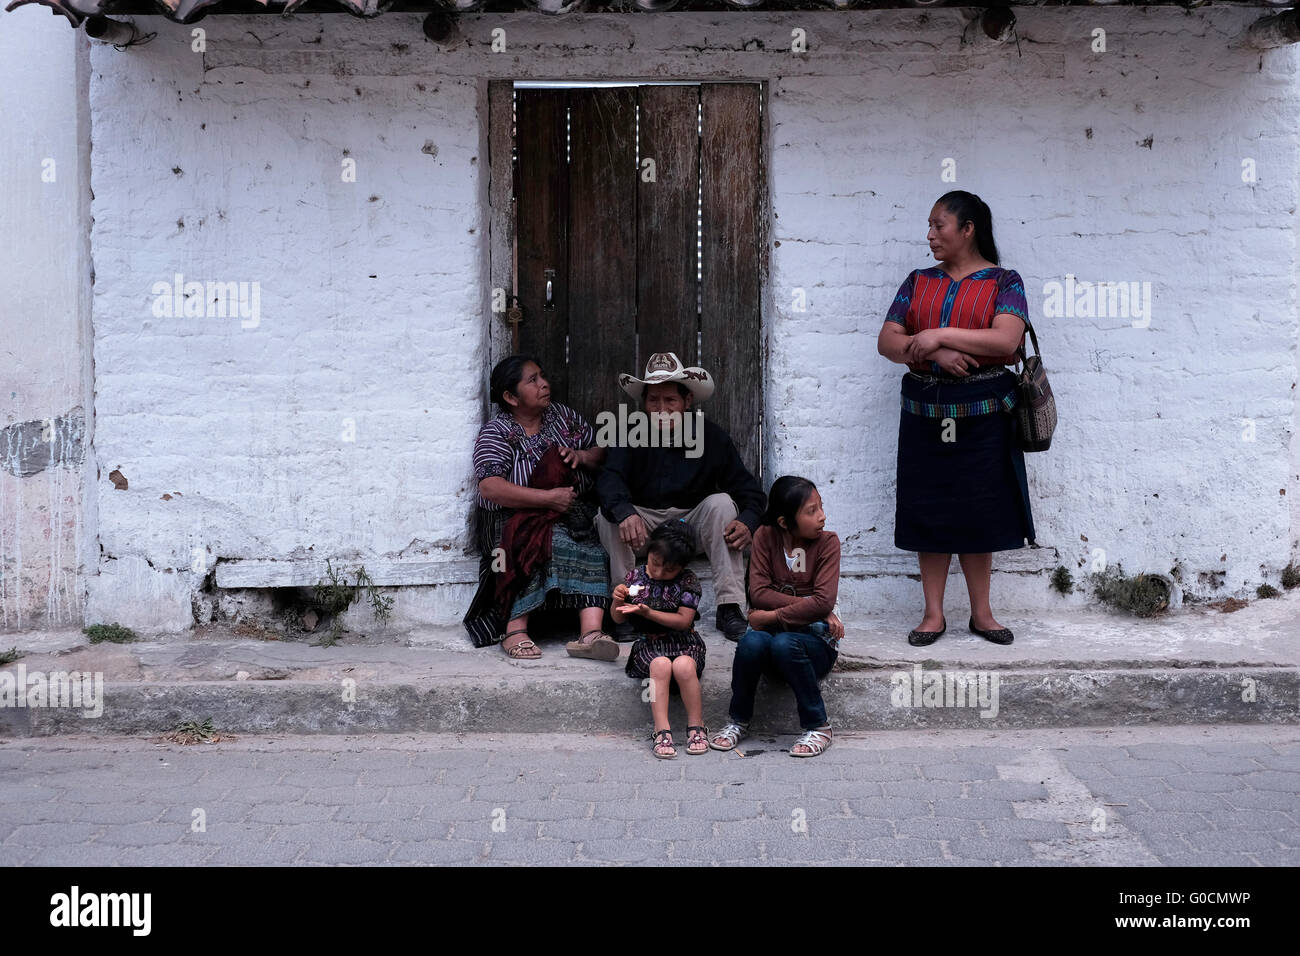 Une famille maya à Chichicastenango également connu sous le nom de Santo Tomás Chichicastenango une ville dans le département de Guatemala El Quiché, connu pour sa culture Maya Kiche traditionnels. Banque D'Images